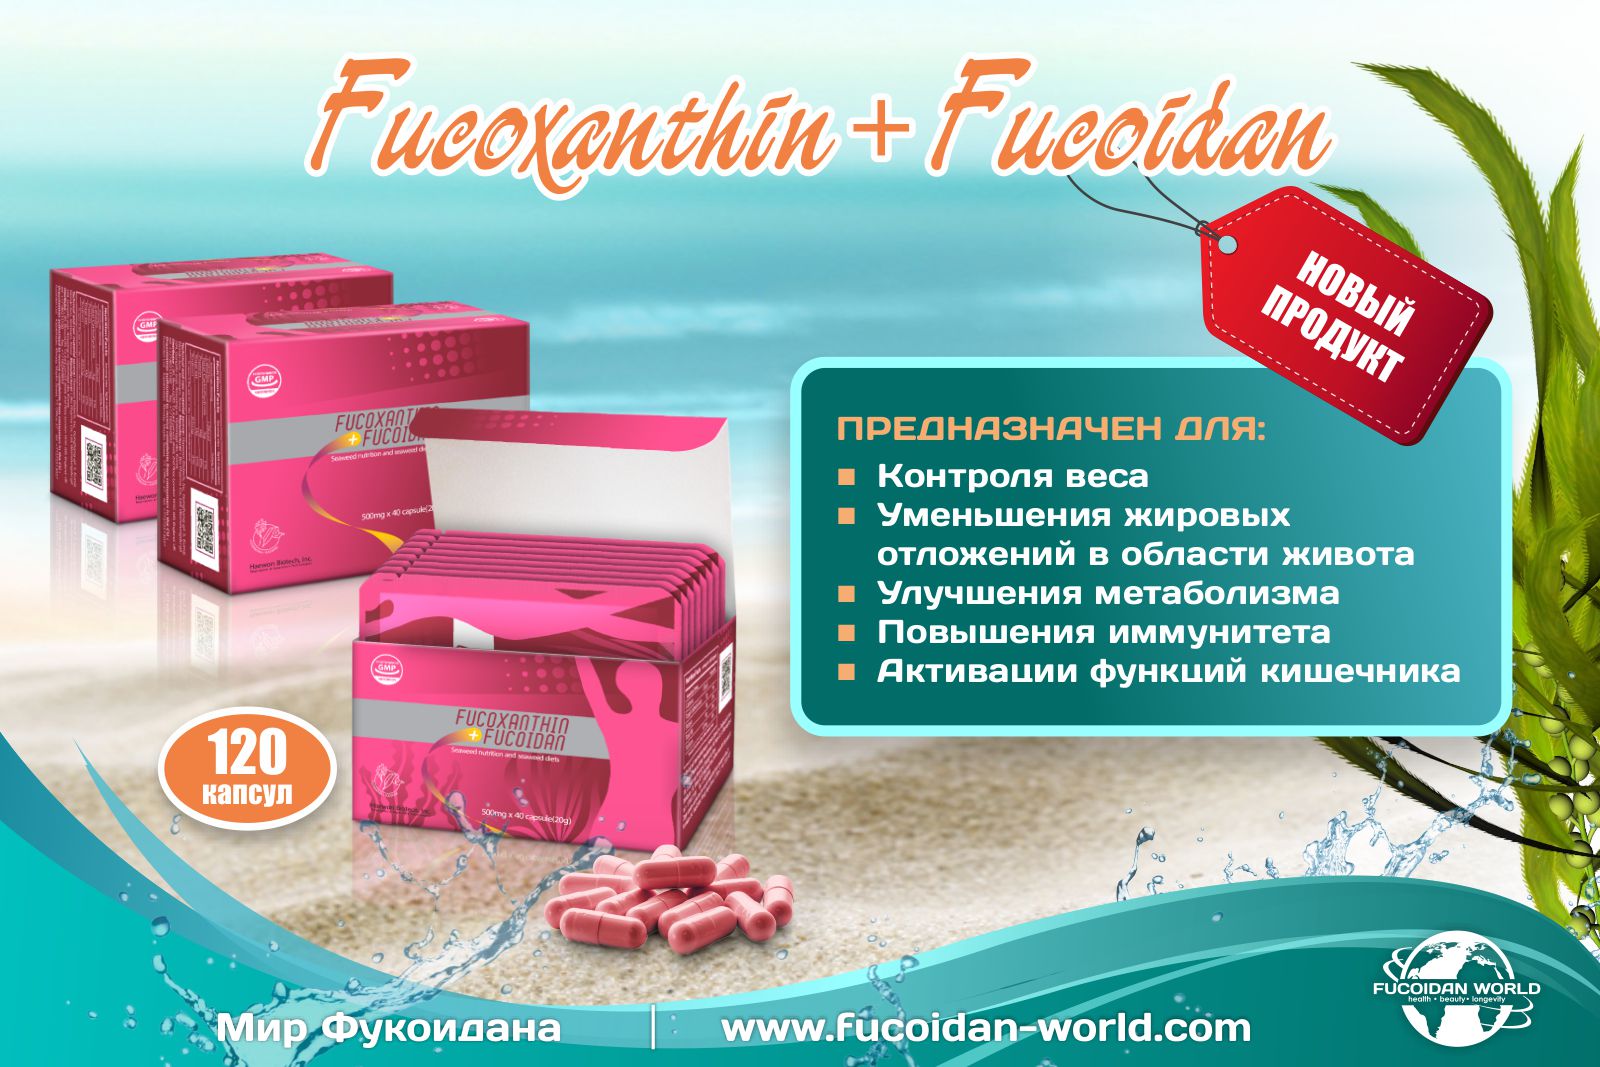 Свойства «Fucoxanthin+Fucoidan»